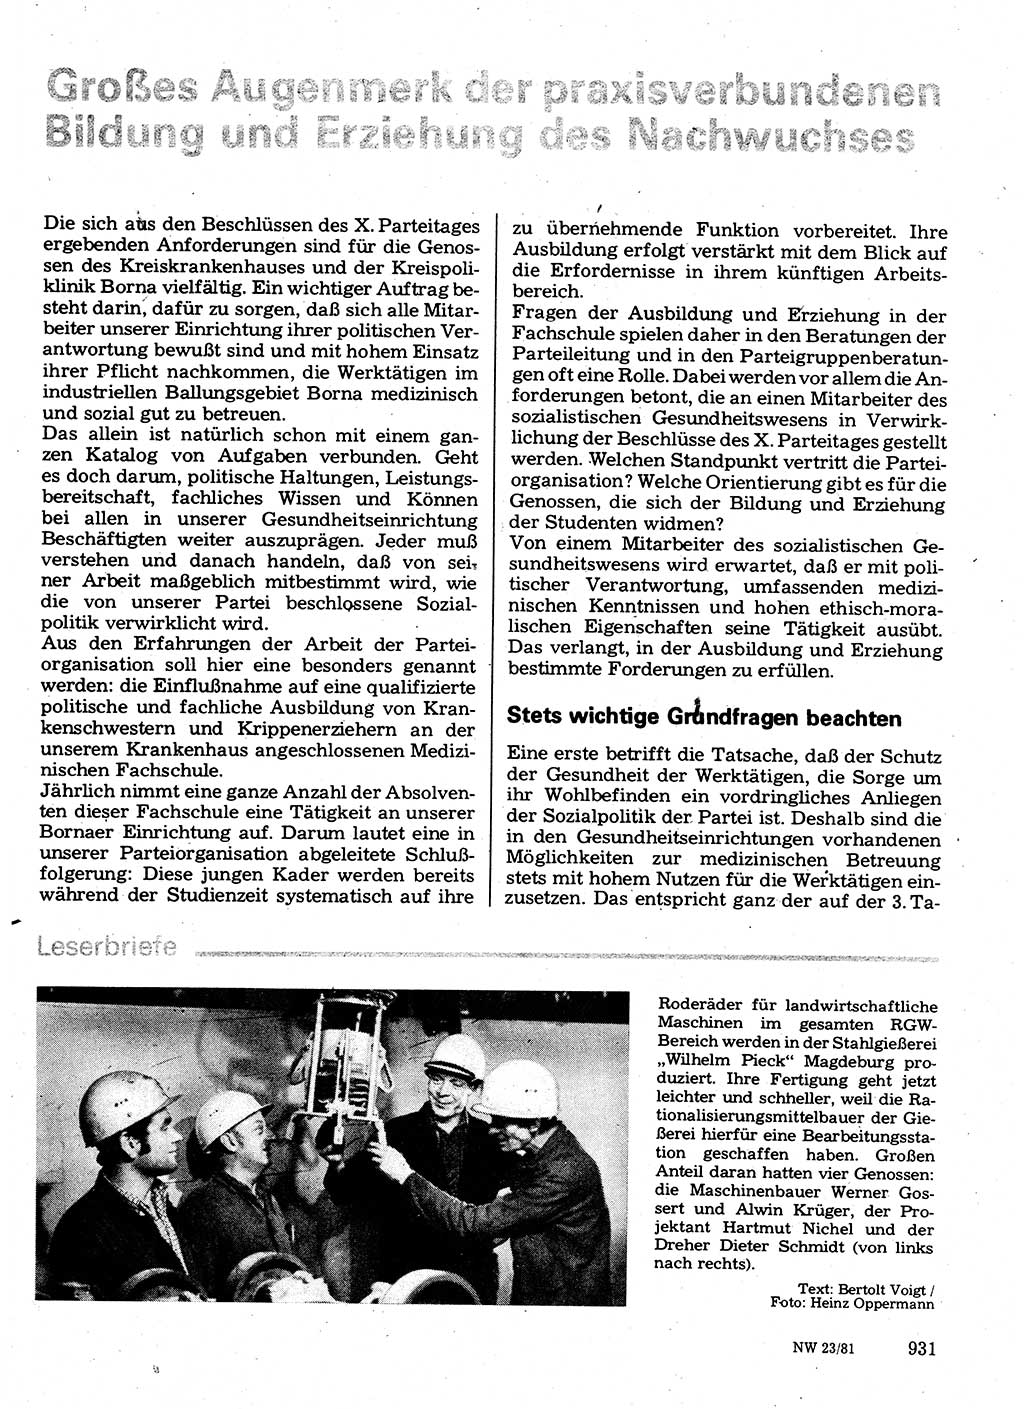 Neuer Weg (NW), Organ des Zentralkomitees (ZK) der SED (Sozialistische Einheitspartei Deutschlands) für Fragen des Parteilebens, 36. Jahrgang [Deutsche Demokratische Republik (DDR)] 1981, Seite 931 (NW ZK SED DDR 1981, S. 931)